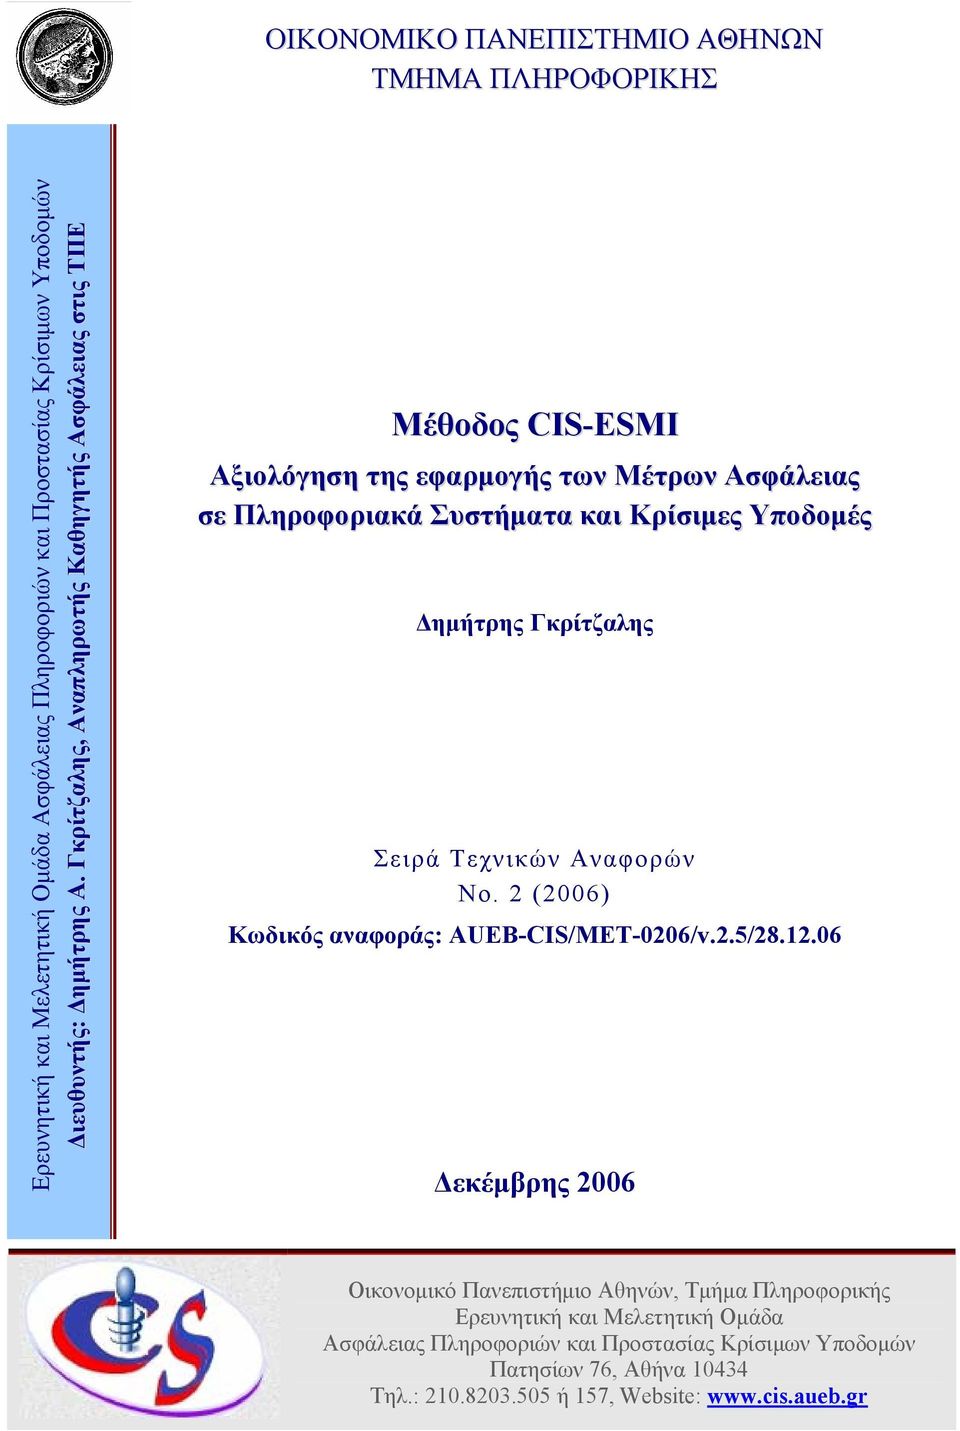 Ασφάλειας Δημήτρης Γκρίτζαλης Σειρά Τεχνικών Αναφορών No. 2 (2006) Κωδικός αναφοράς: AUEB-CIS/MET-0206/v.2.5/28.